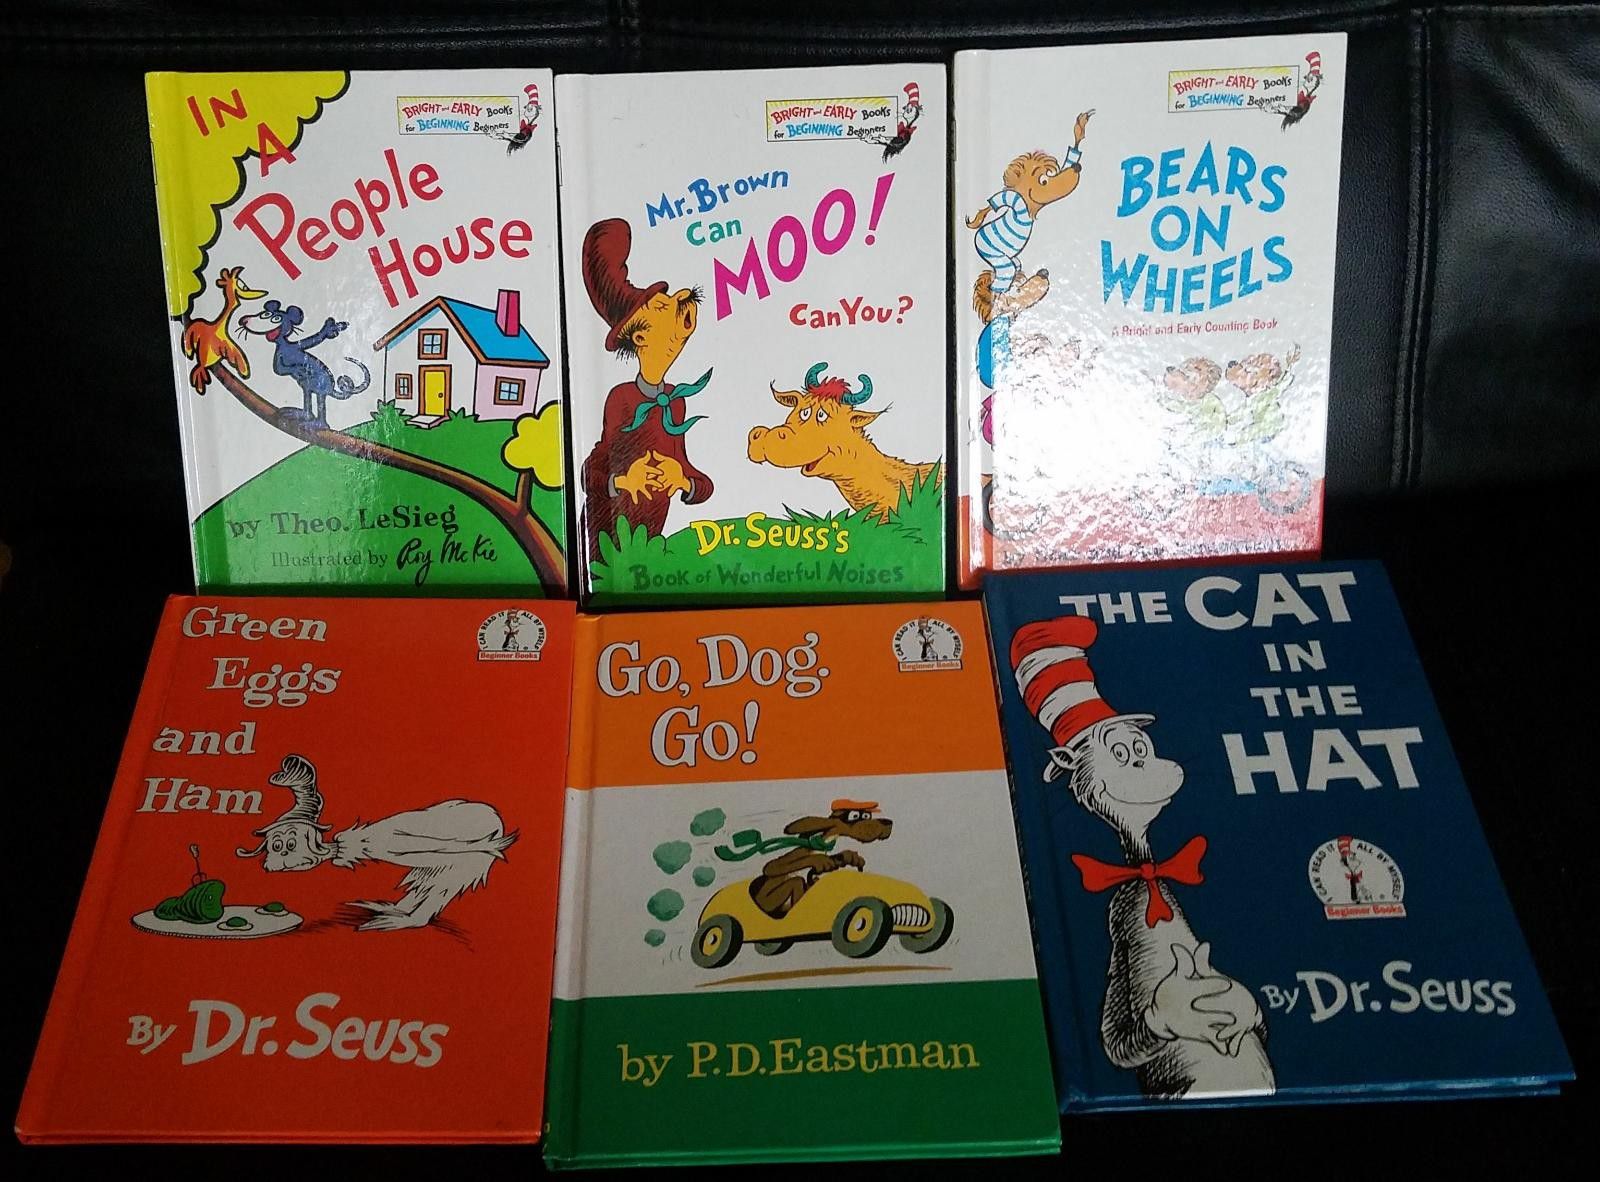 Dr Seus' books